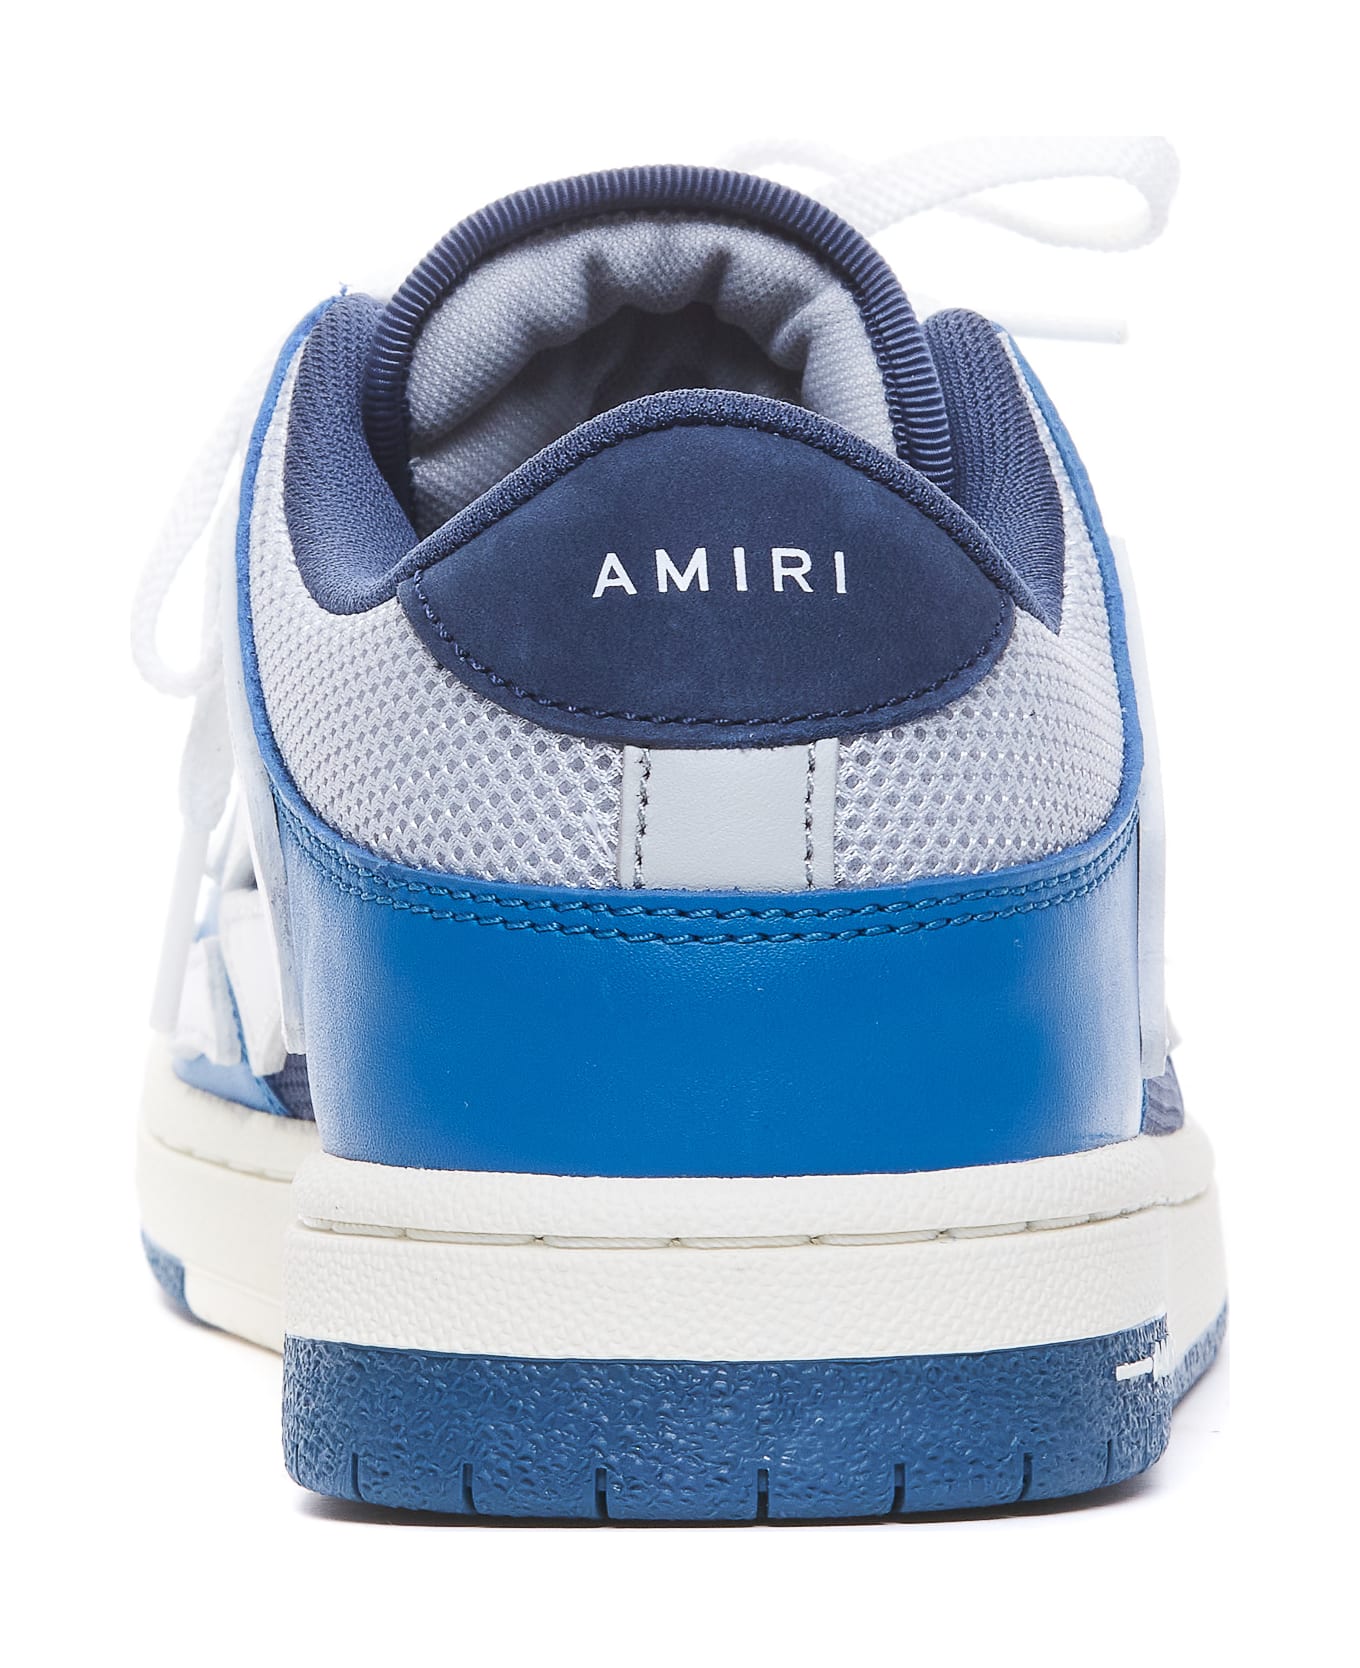 AMIRI Mesh Skel Top Sneakers - Blue スニーカー